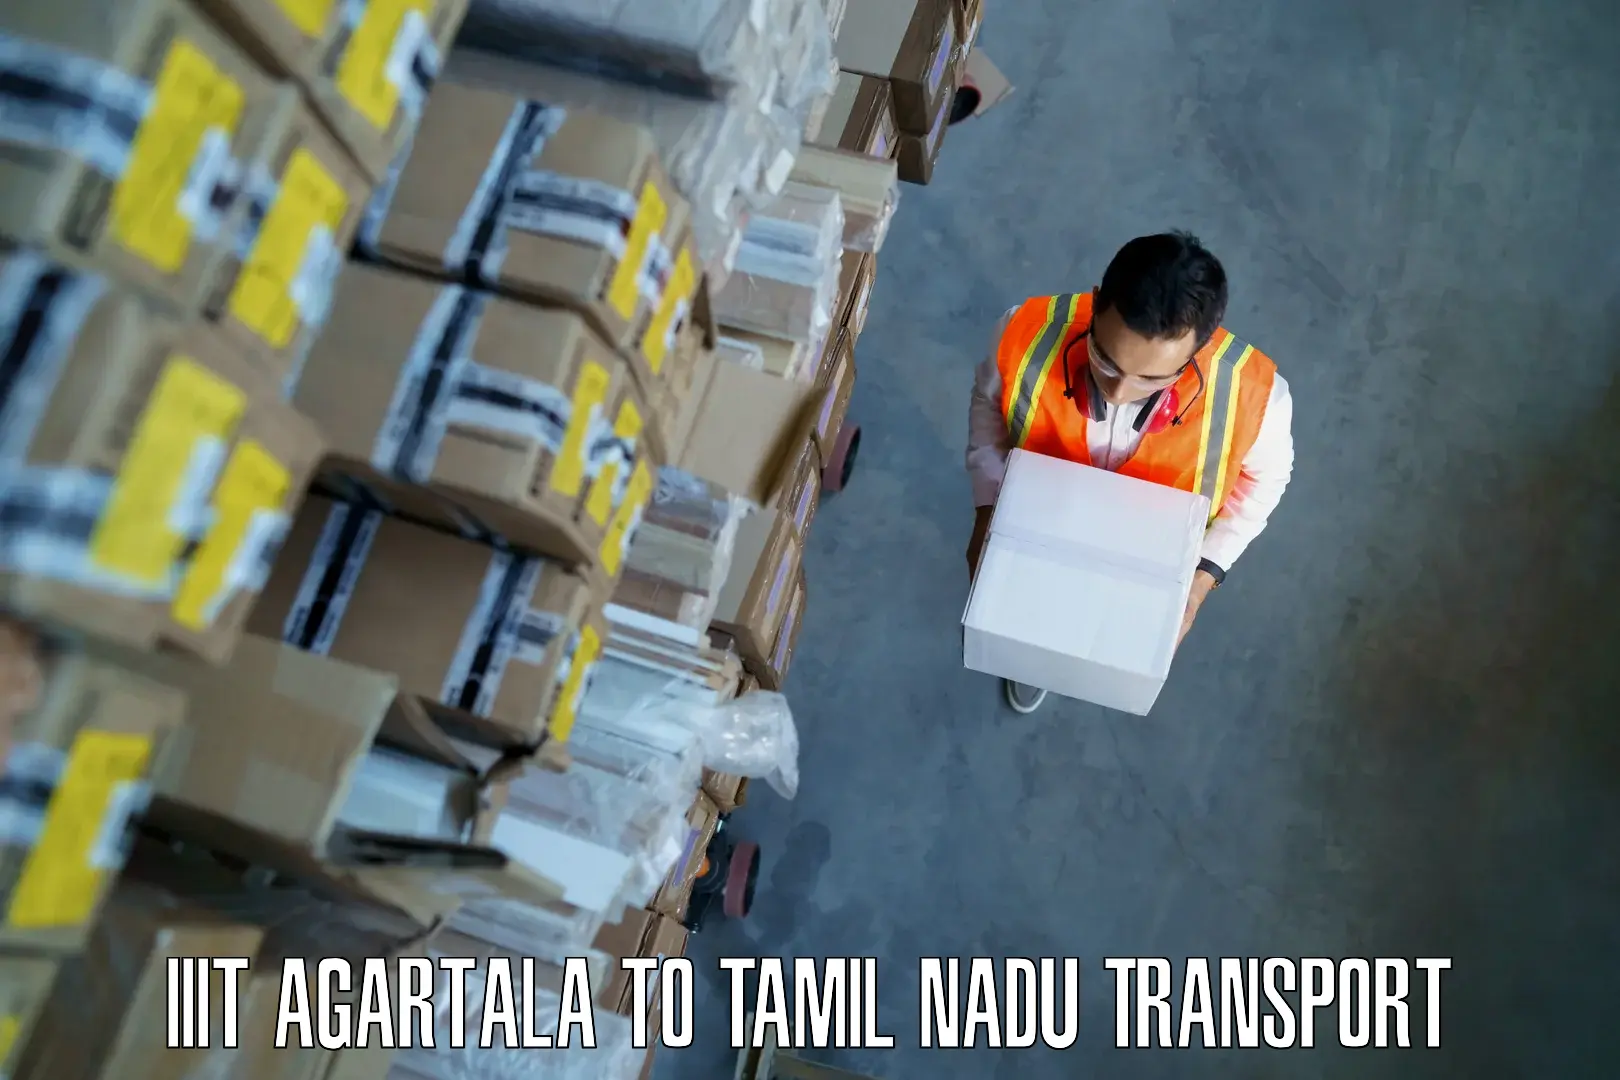 Daily transport service IIIT Agartala to Thirukkattupalli